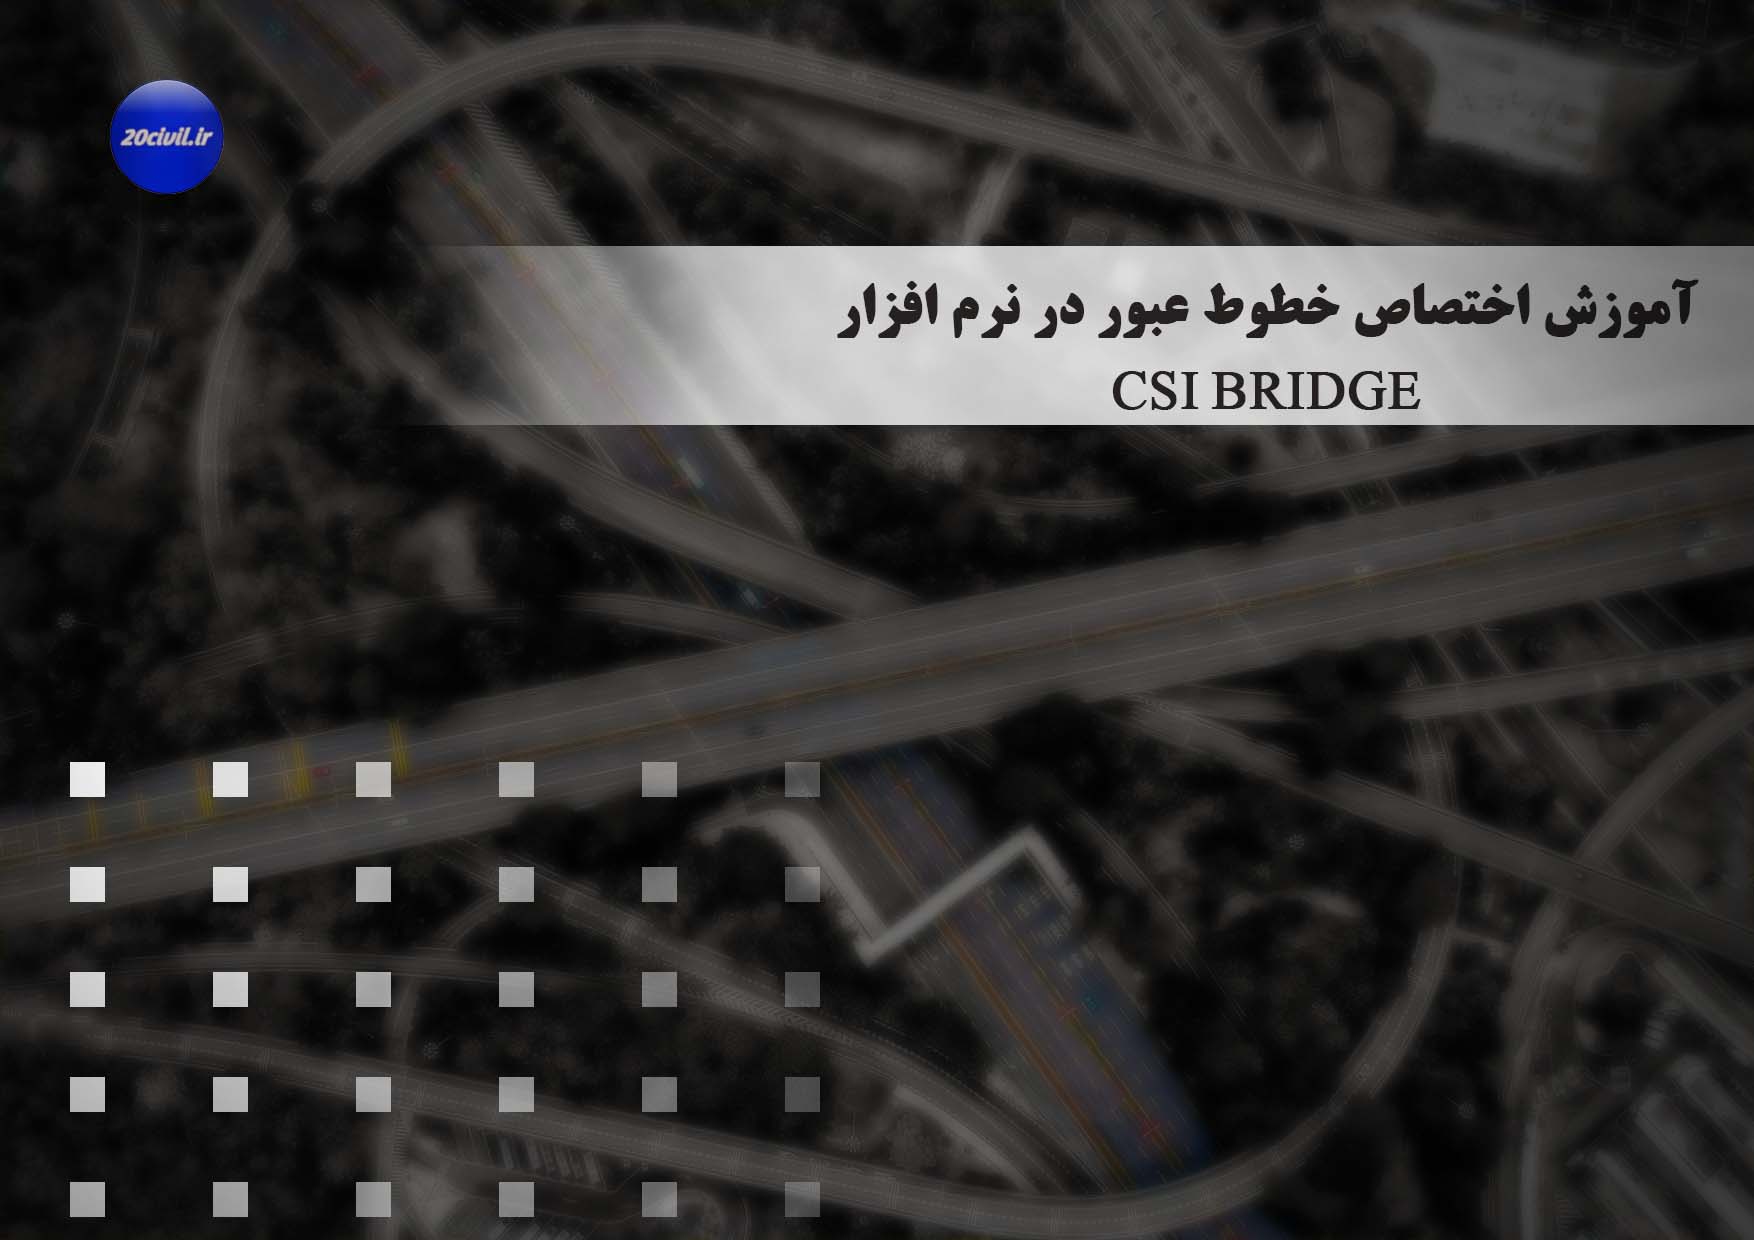 باگذاری-پلها-در-CSi-bridge-آموزش-طراحی-پل-20civil.ir_-1